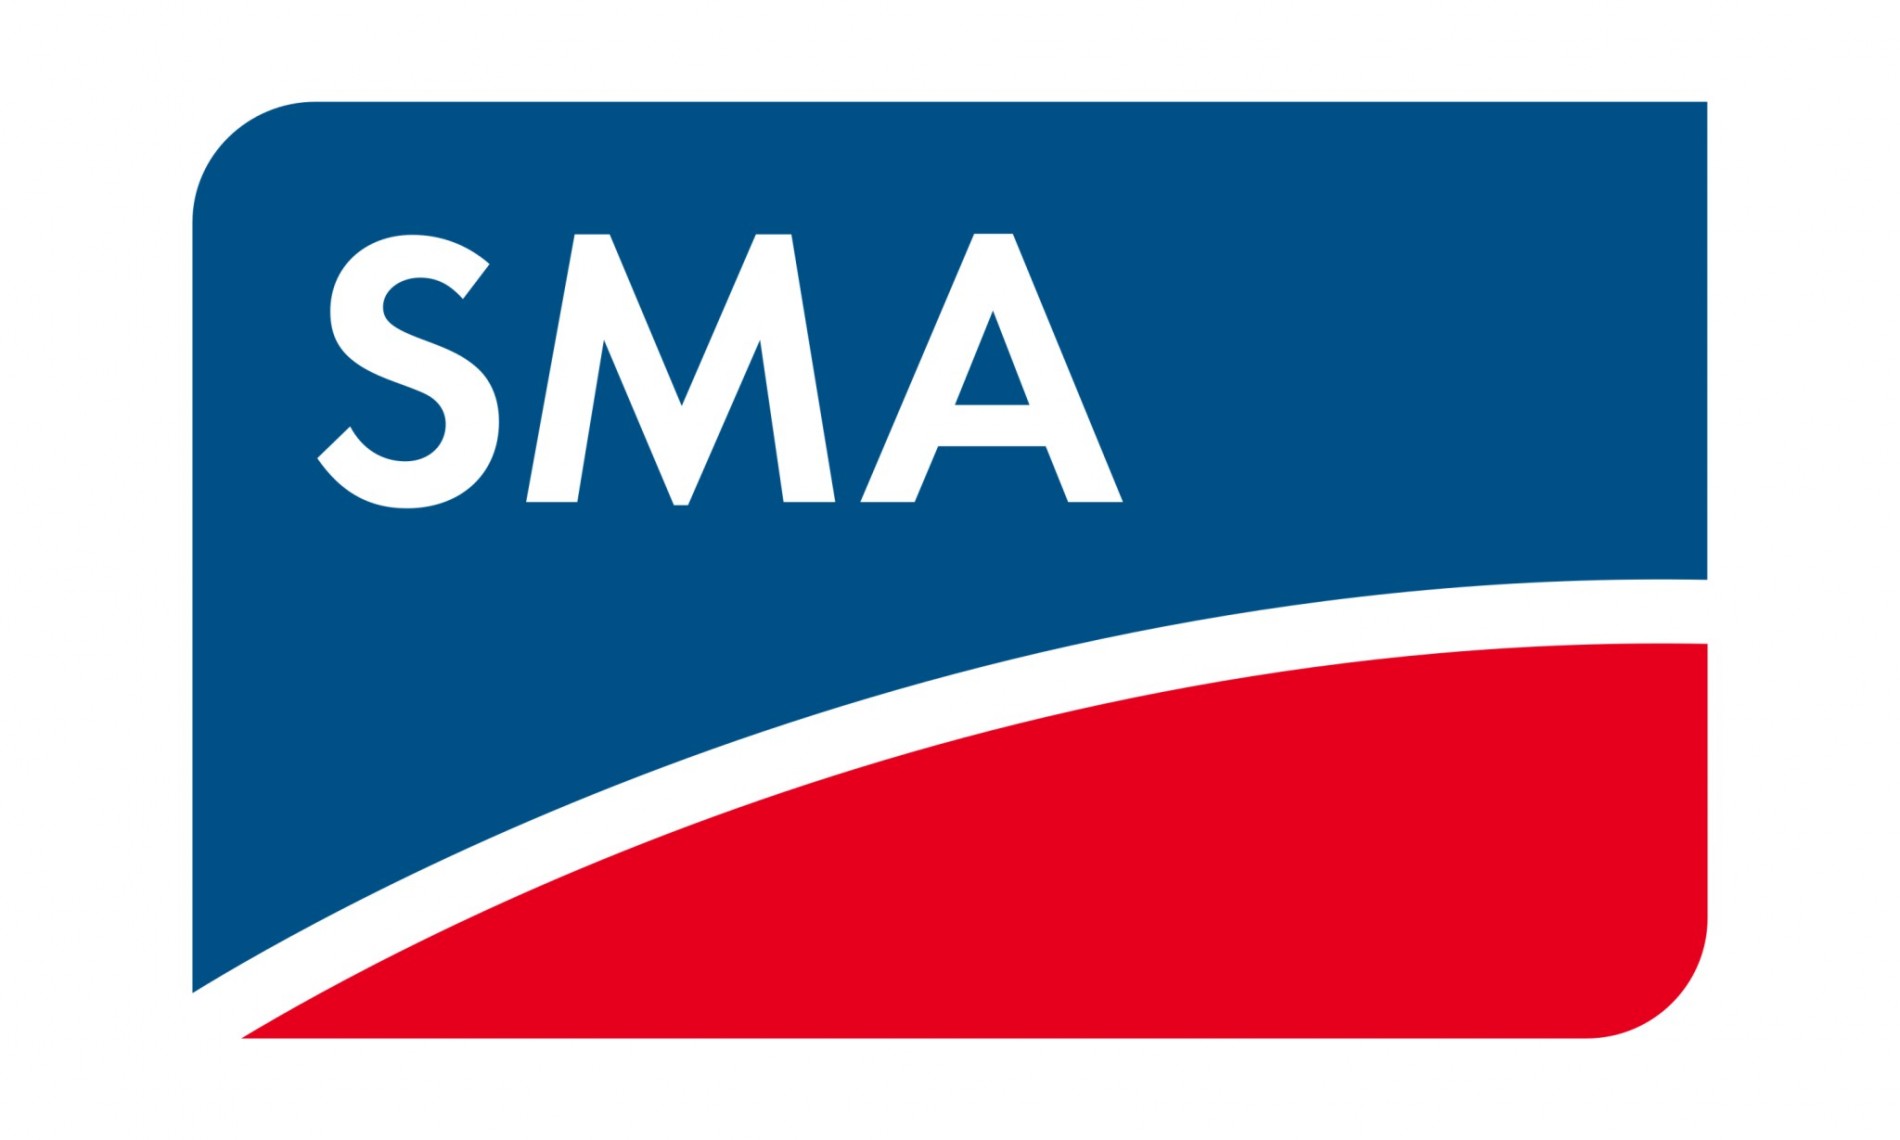 logo_sma